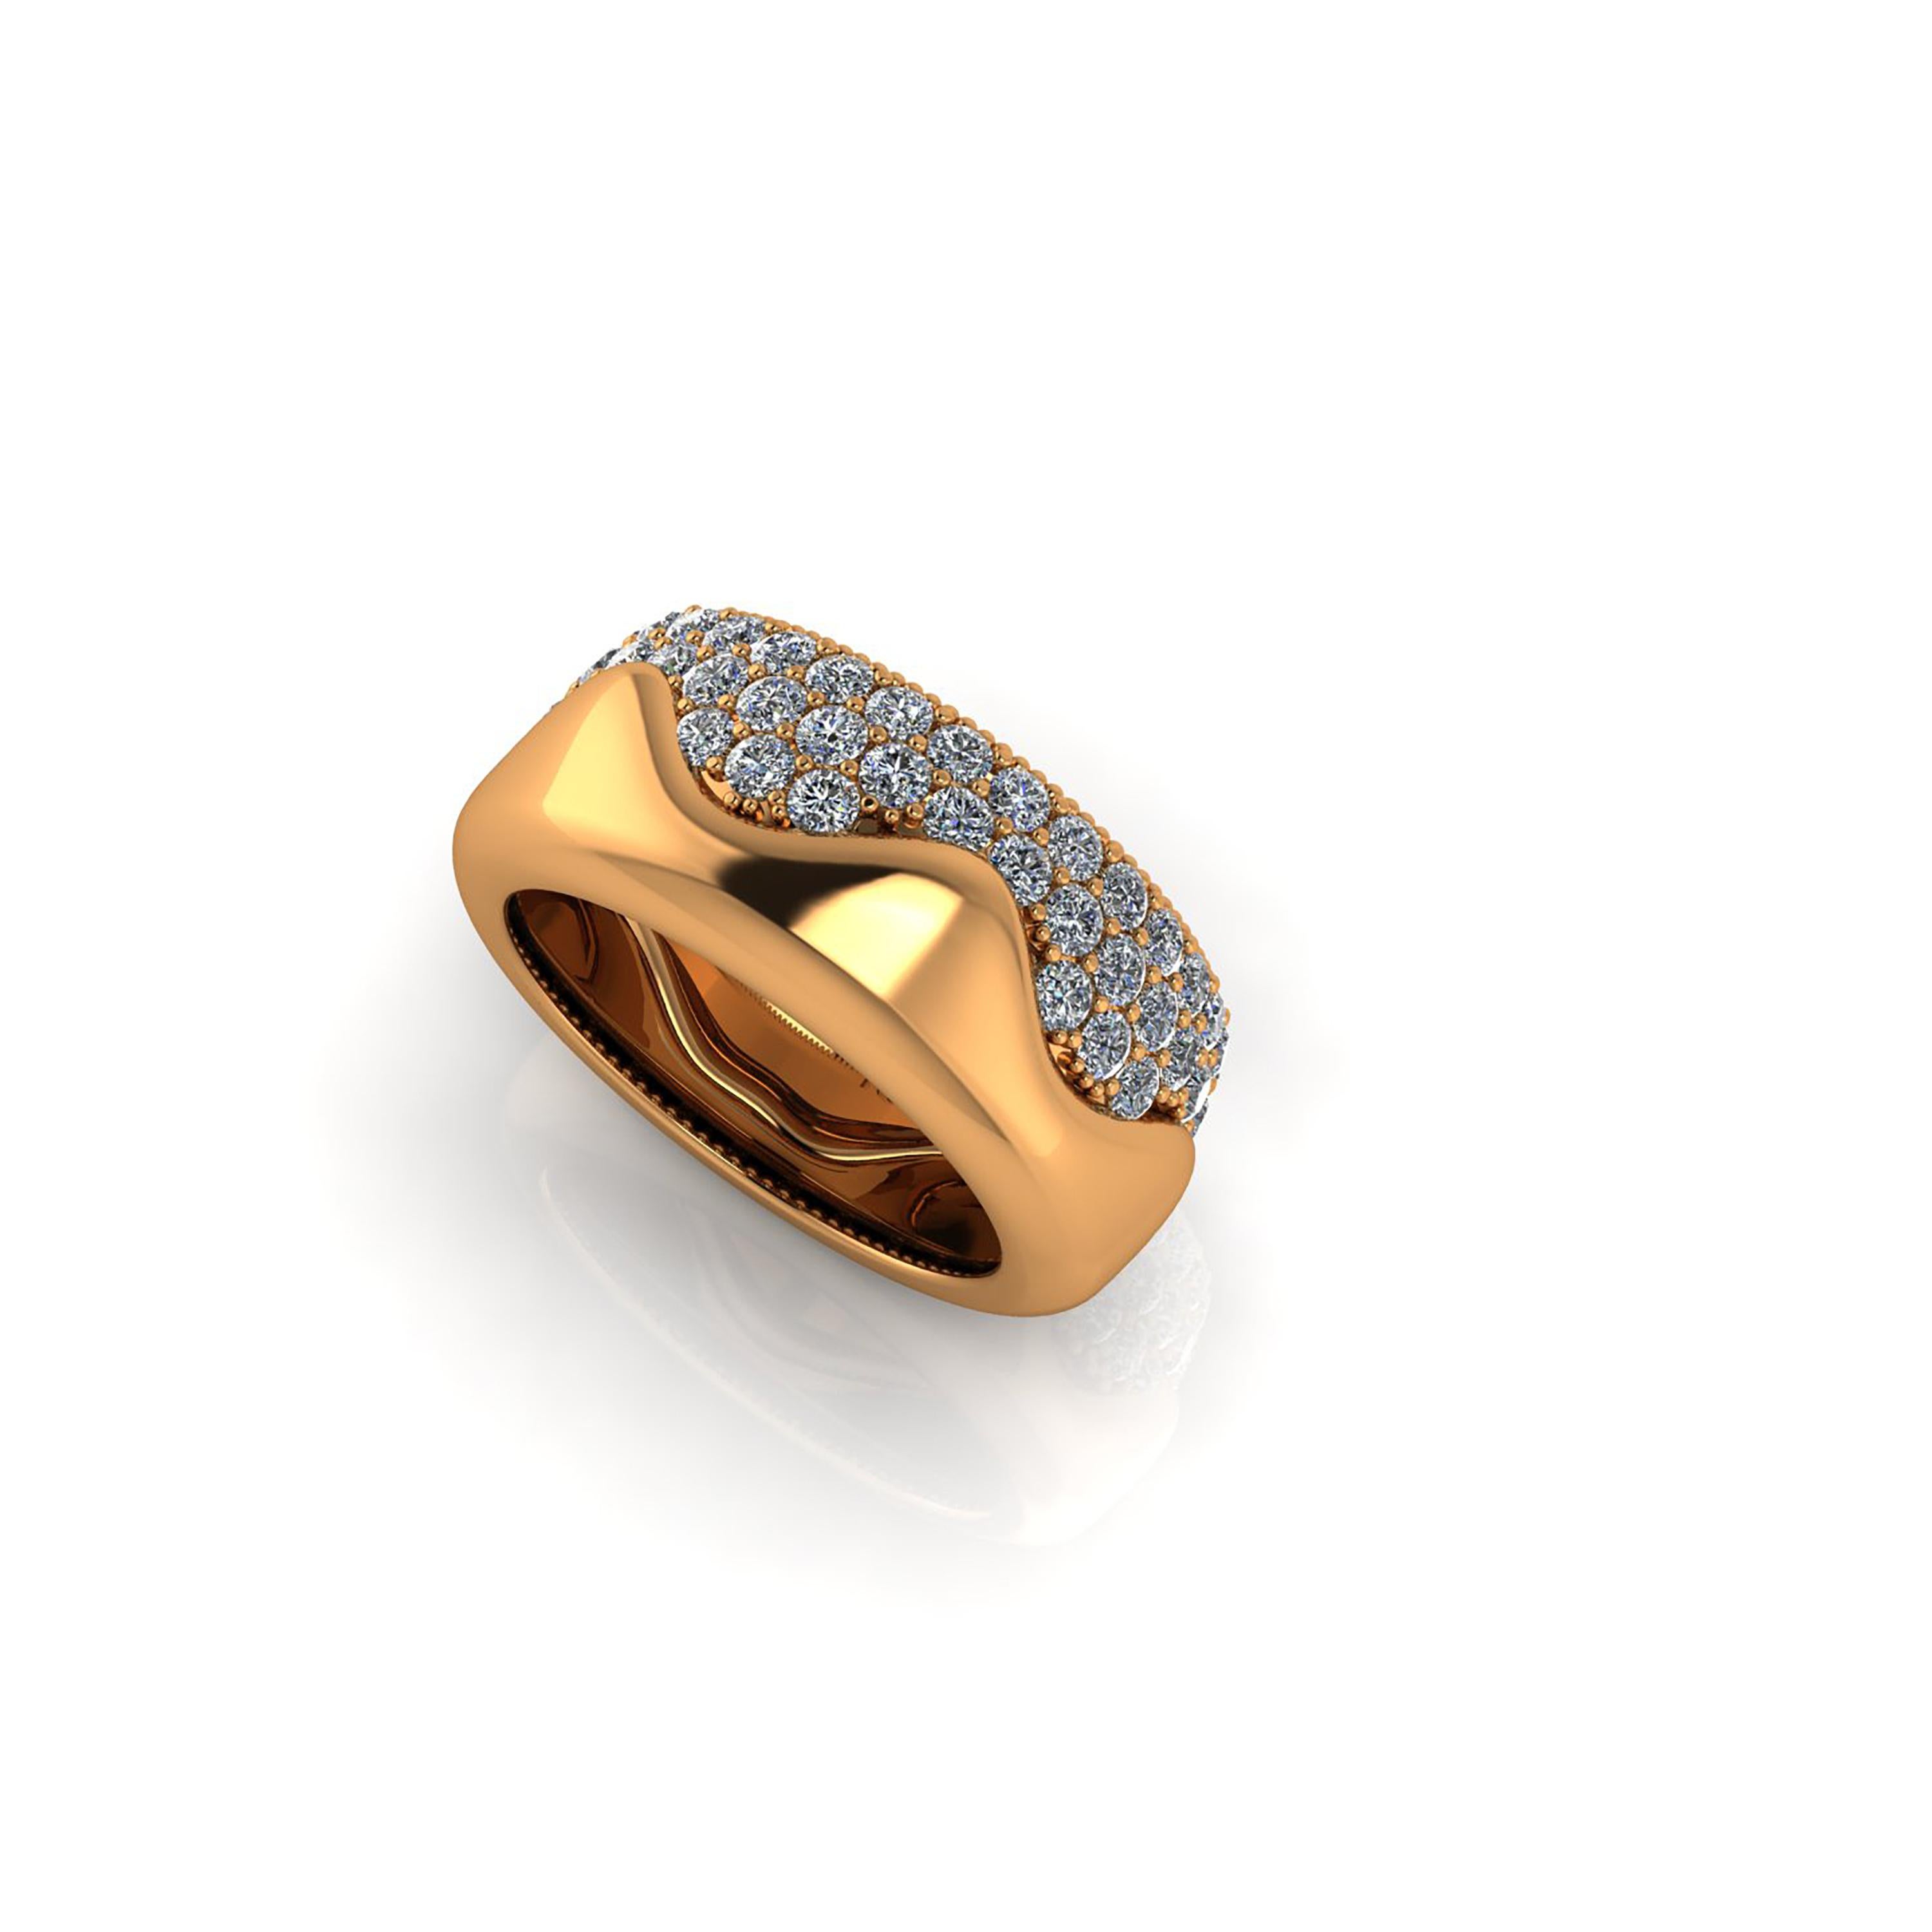 2.30 Carat White Diamond Melting Away Pave Ring in 18 Karat Yellow Gold For Sale 1